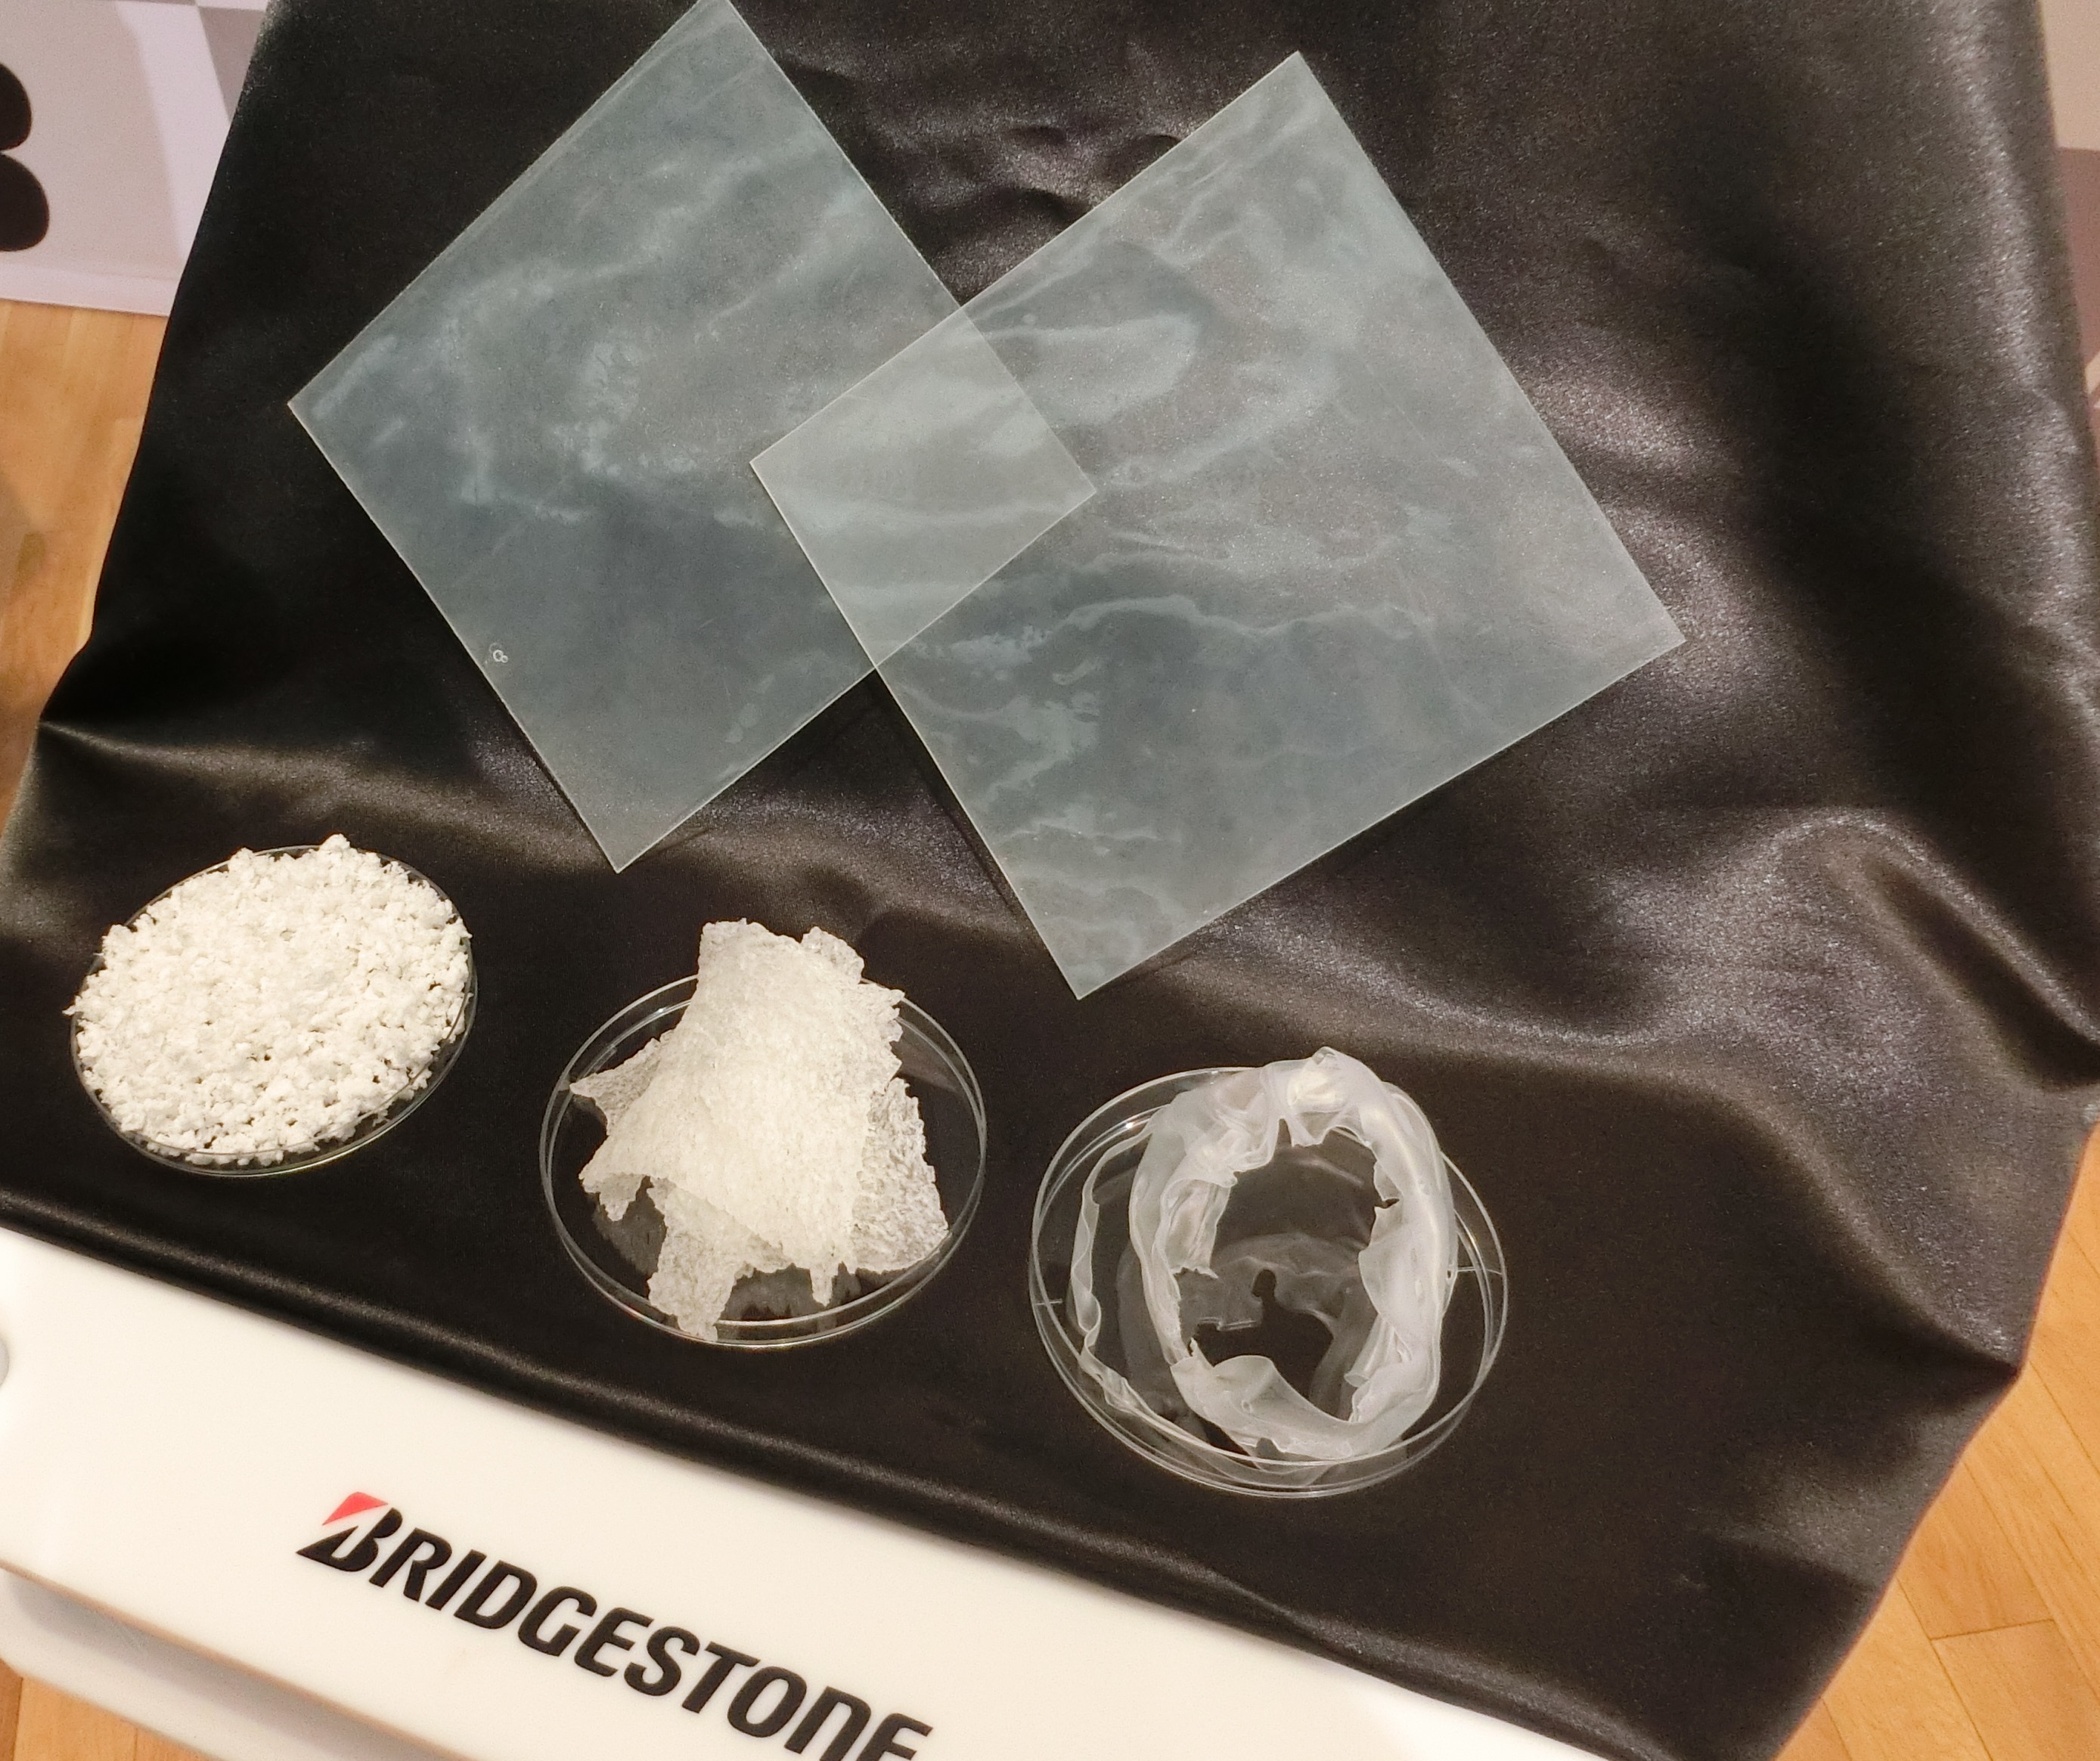 Bridgestone Develops World's First Polymer With Superior Wear Resistance